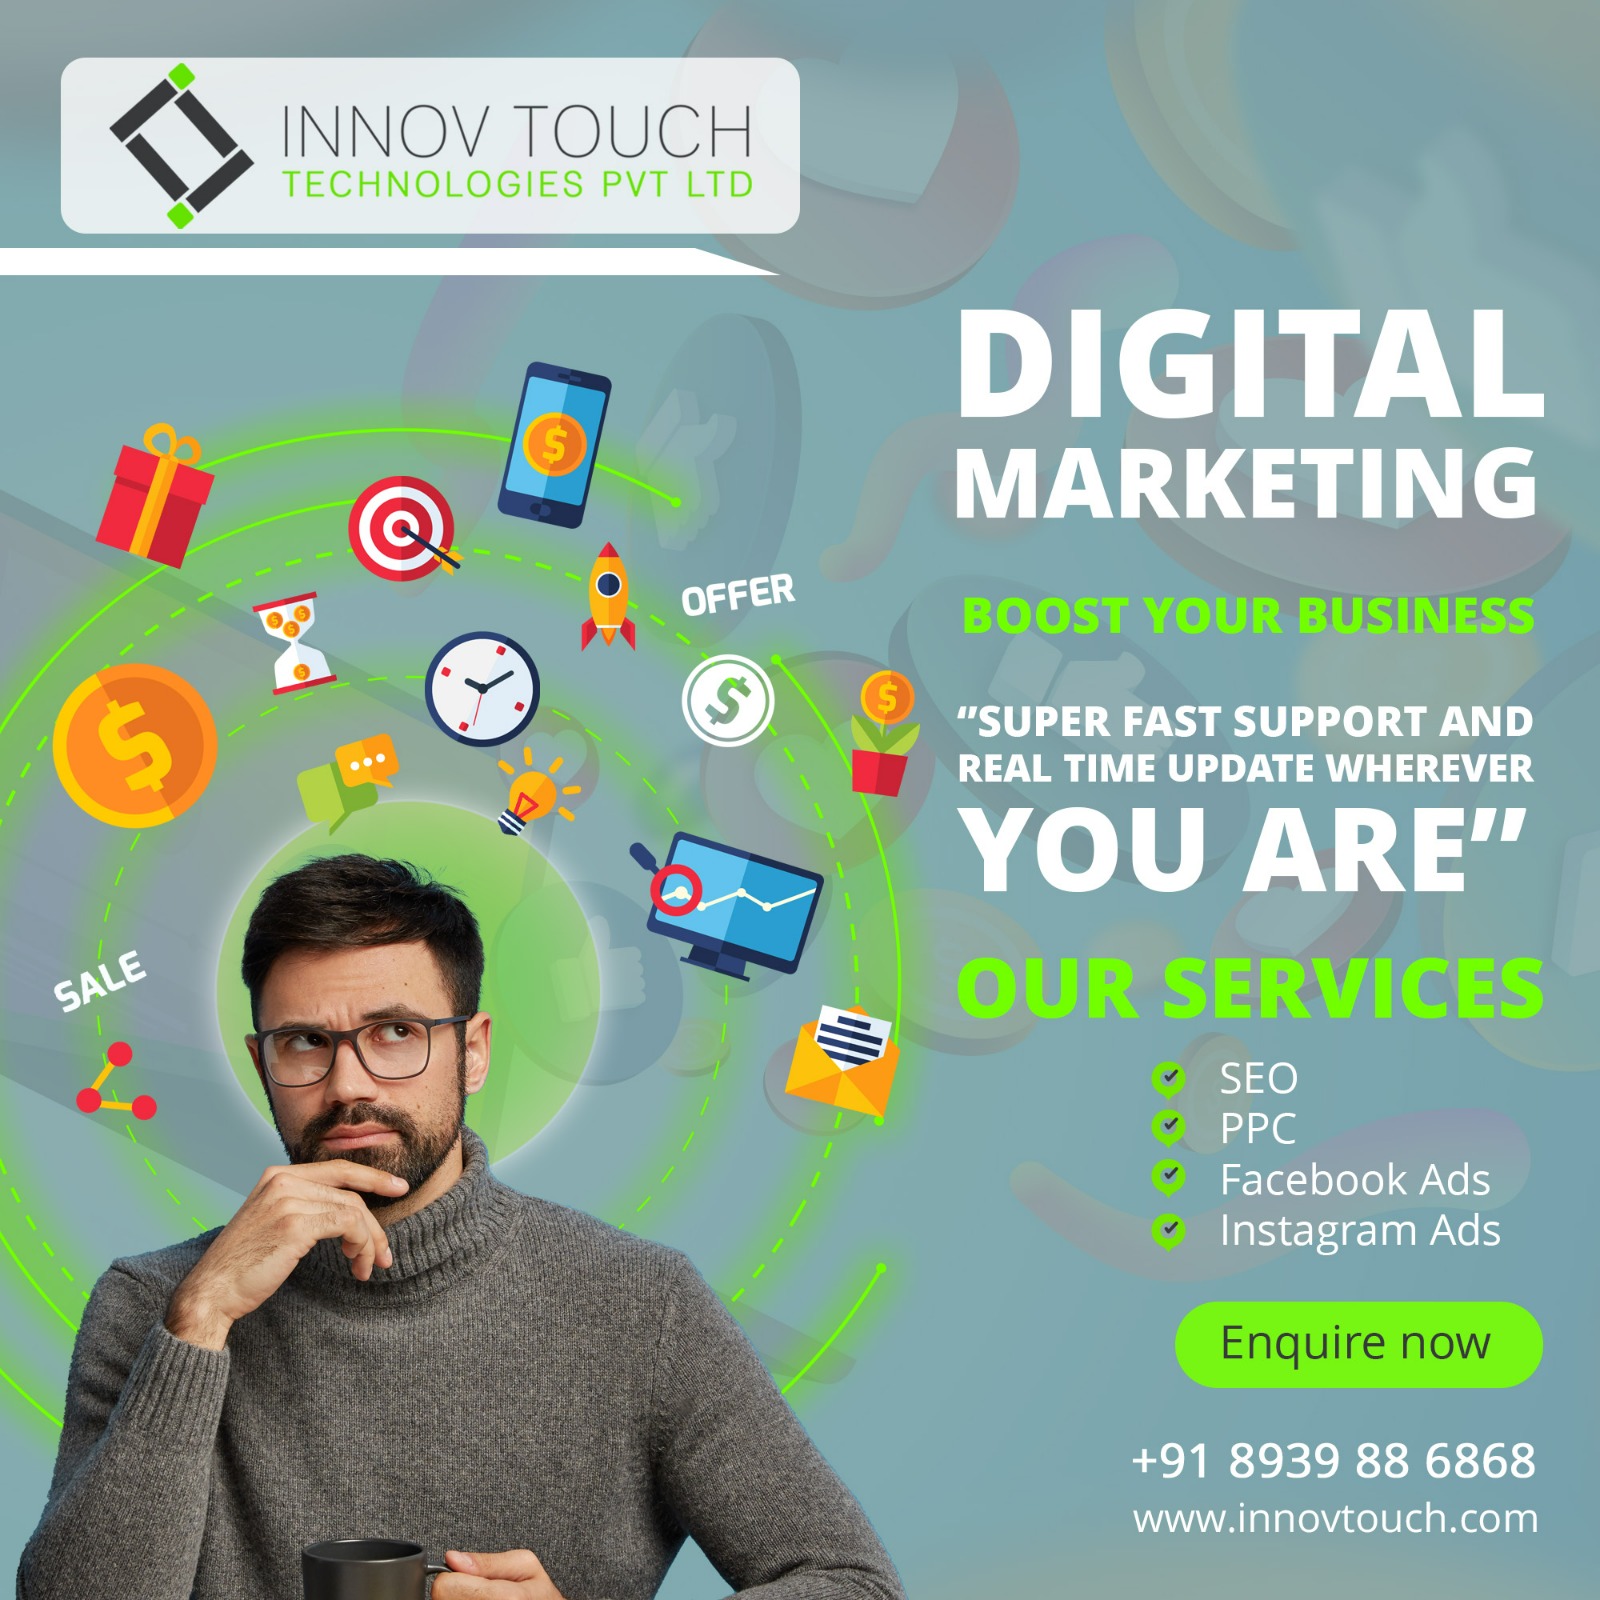 digital marketing company in chennai